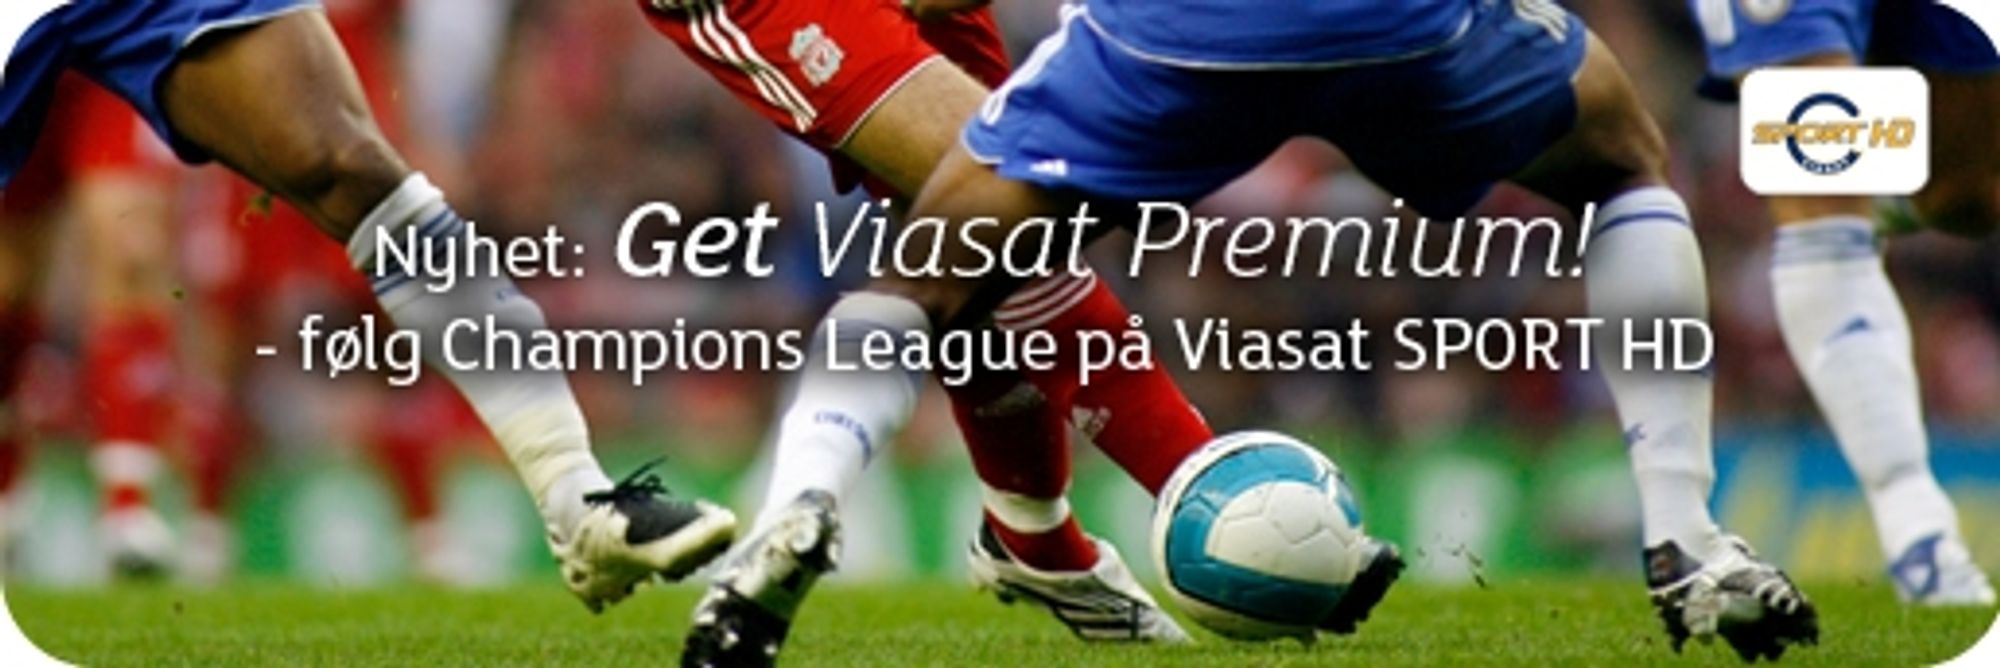 Tilbyr Viasat Premium